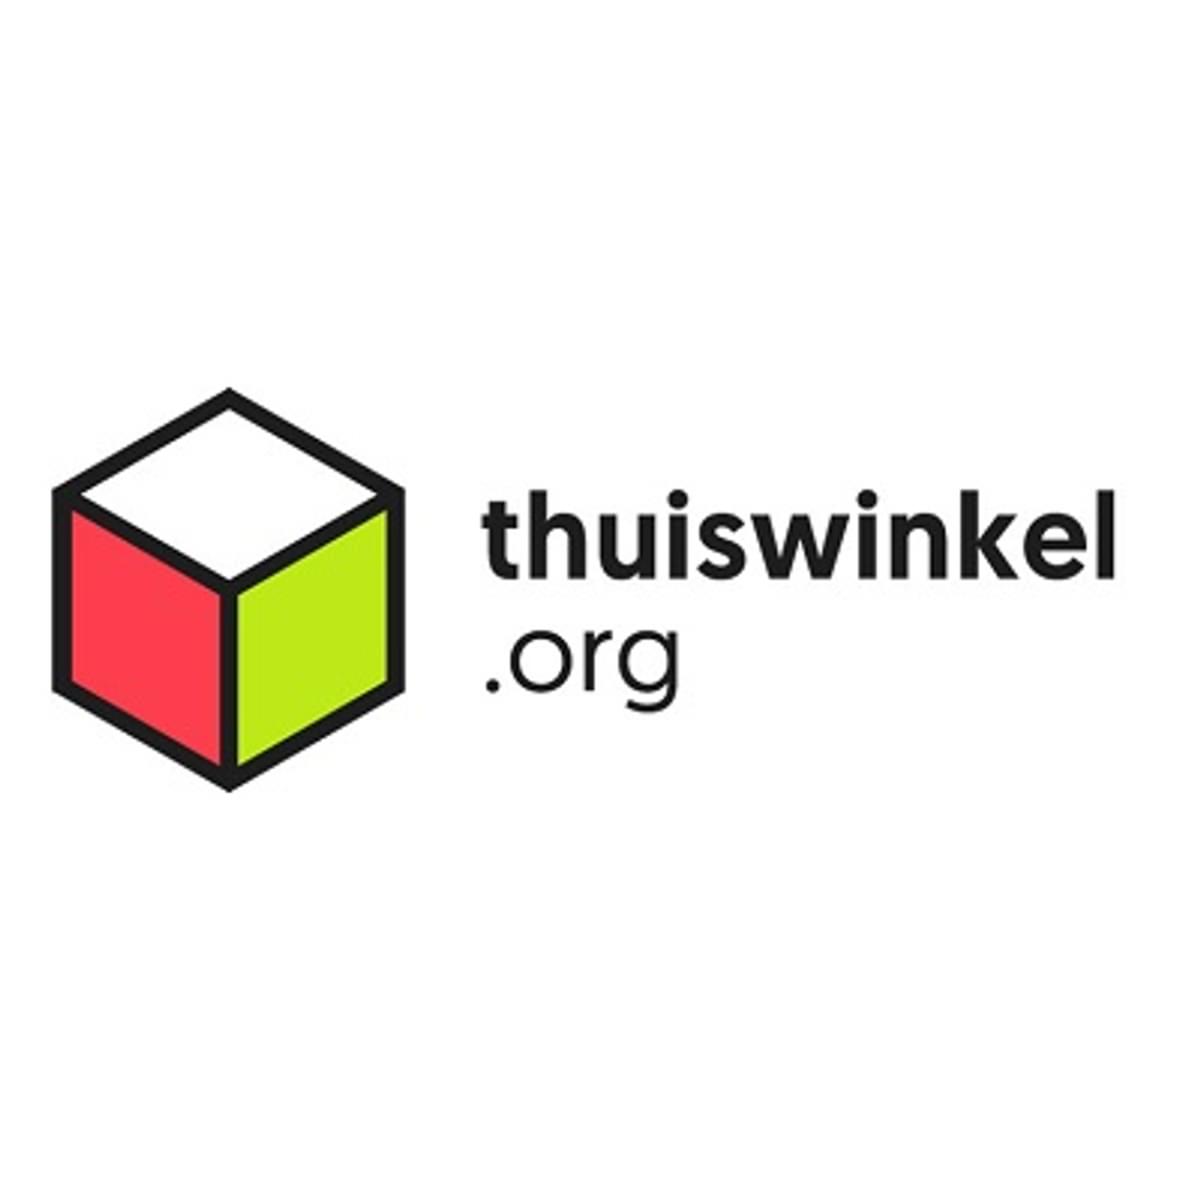 Thuiswinkel.org adviseert webwinkels retourtermijn te verlengen image